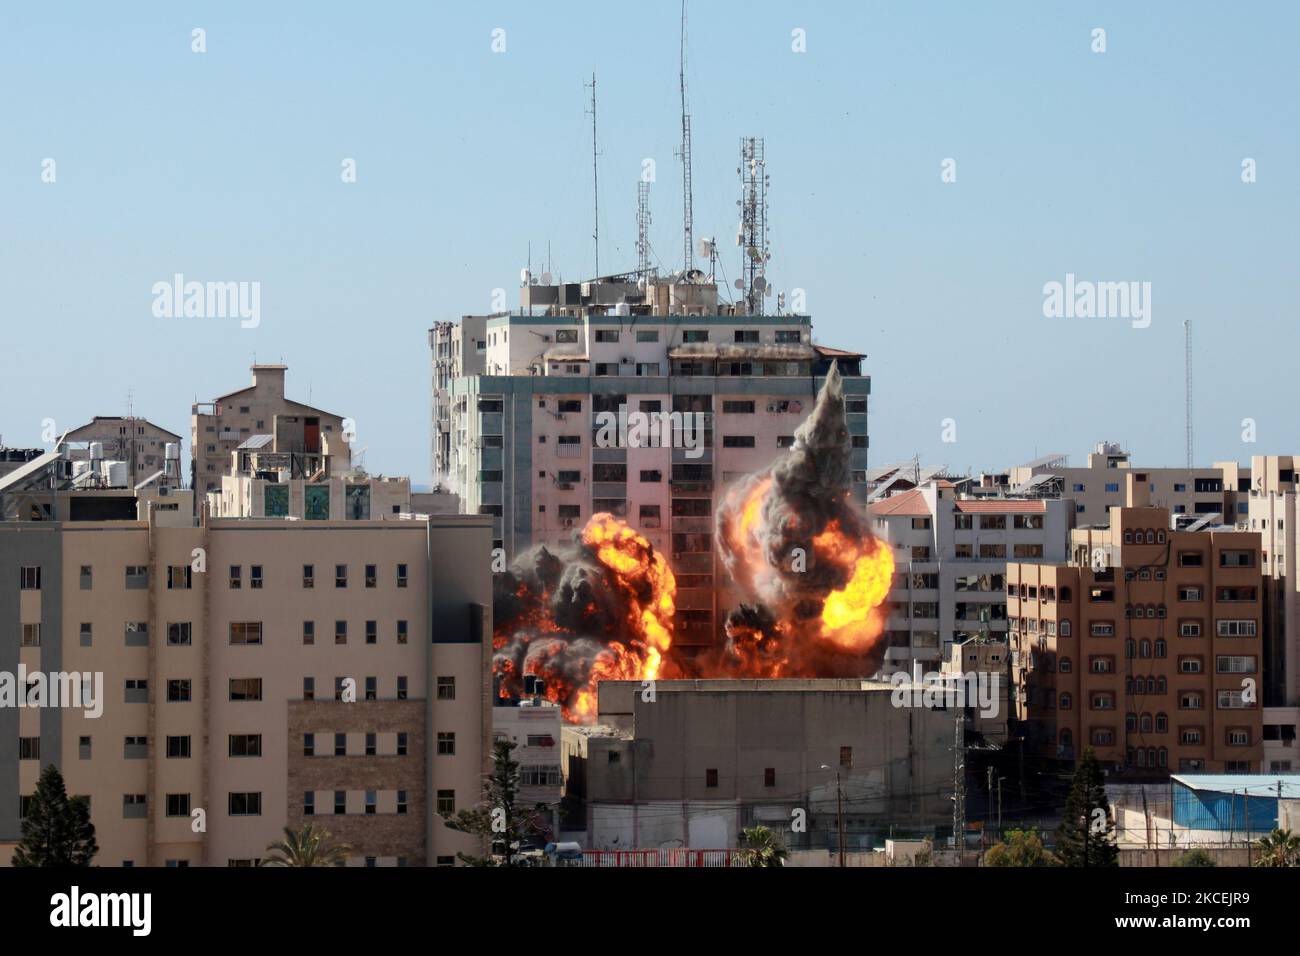 Am 15. Mai 2021 bricht aus dem Jala-Turm ein Feuerball aus, der bei einem israelischen Luftangriff in Gaza-Stadt zerstört wird, der von der palästinensischen Hamas-Bewegung kontrolliert wird. - Israelische Luftangriffe schlugen den Gazastreifen ein, töteten 10 Mitglieder einer Großfamilie und zerstörten ein wichtiges Mediengebäude, während palästinensische Kämpfer im Gegenzug unter Gewalt im Westjordanland Raketen abfeuerten. Die israelische Luftwaffe zielte auf den 13-stöckigen Jala Tower, in dem das in Katar ansässige Al-Jazeera-Fernsehen und die Nachrichtenagentur Associated Press untergebracht sind. (Foto von Majdi Fathi/NurPhoto) Stockfoto